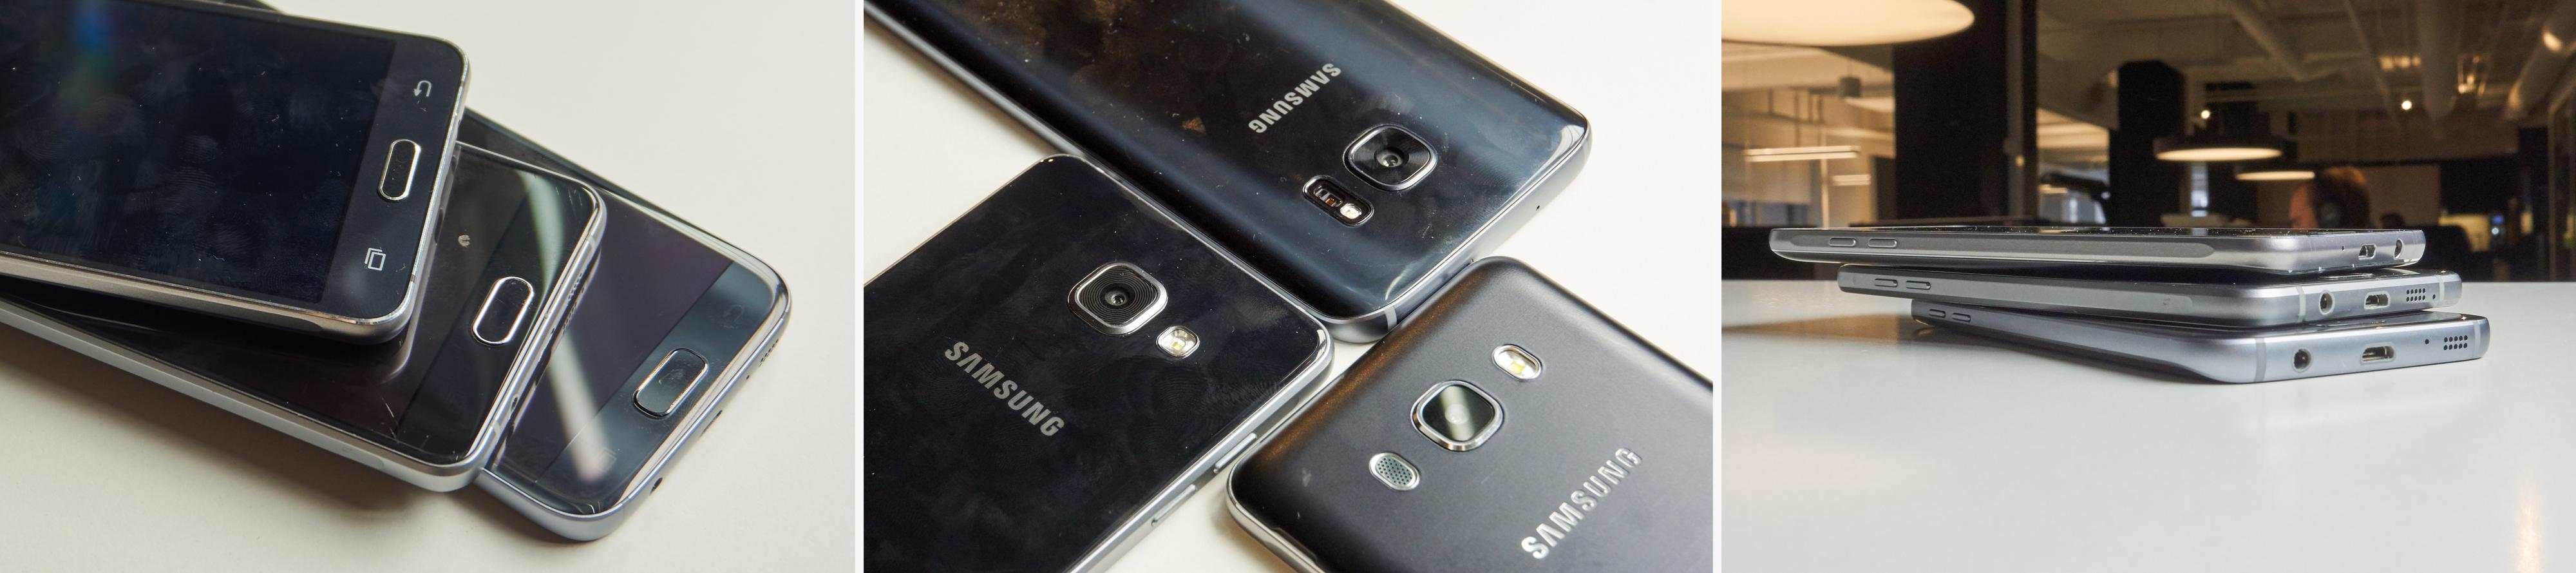 Galaxy S7, Galaxy A5 (2016) og Galaxy J5 (2016) er ikke så ulike som forgjengerne sine. Nå er alle bygget i metall, og har en utpreget premium-følelse. Materialkvaliteten på de to førstnevnte er imidlertid mye høyere enn på J5, som virker mindre sofistikert. Det er plast bak, hjemknappen ripes fort opp, aluminiumen er av dårligere kvalitet og med kjipere finish – og kameraet har ikke noen ekstra detaljer (les: ringer rundt objektivet).